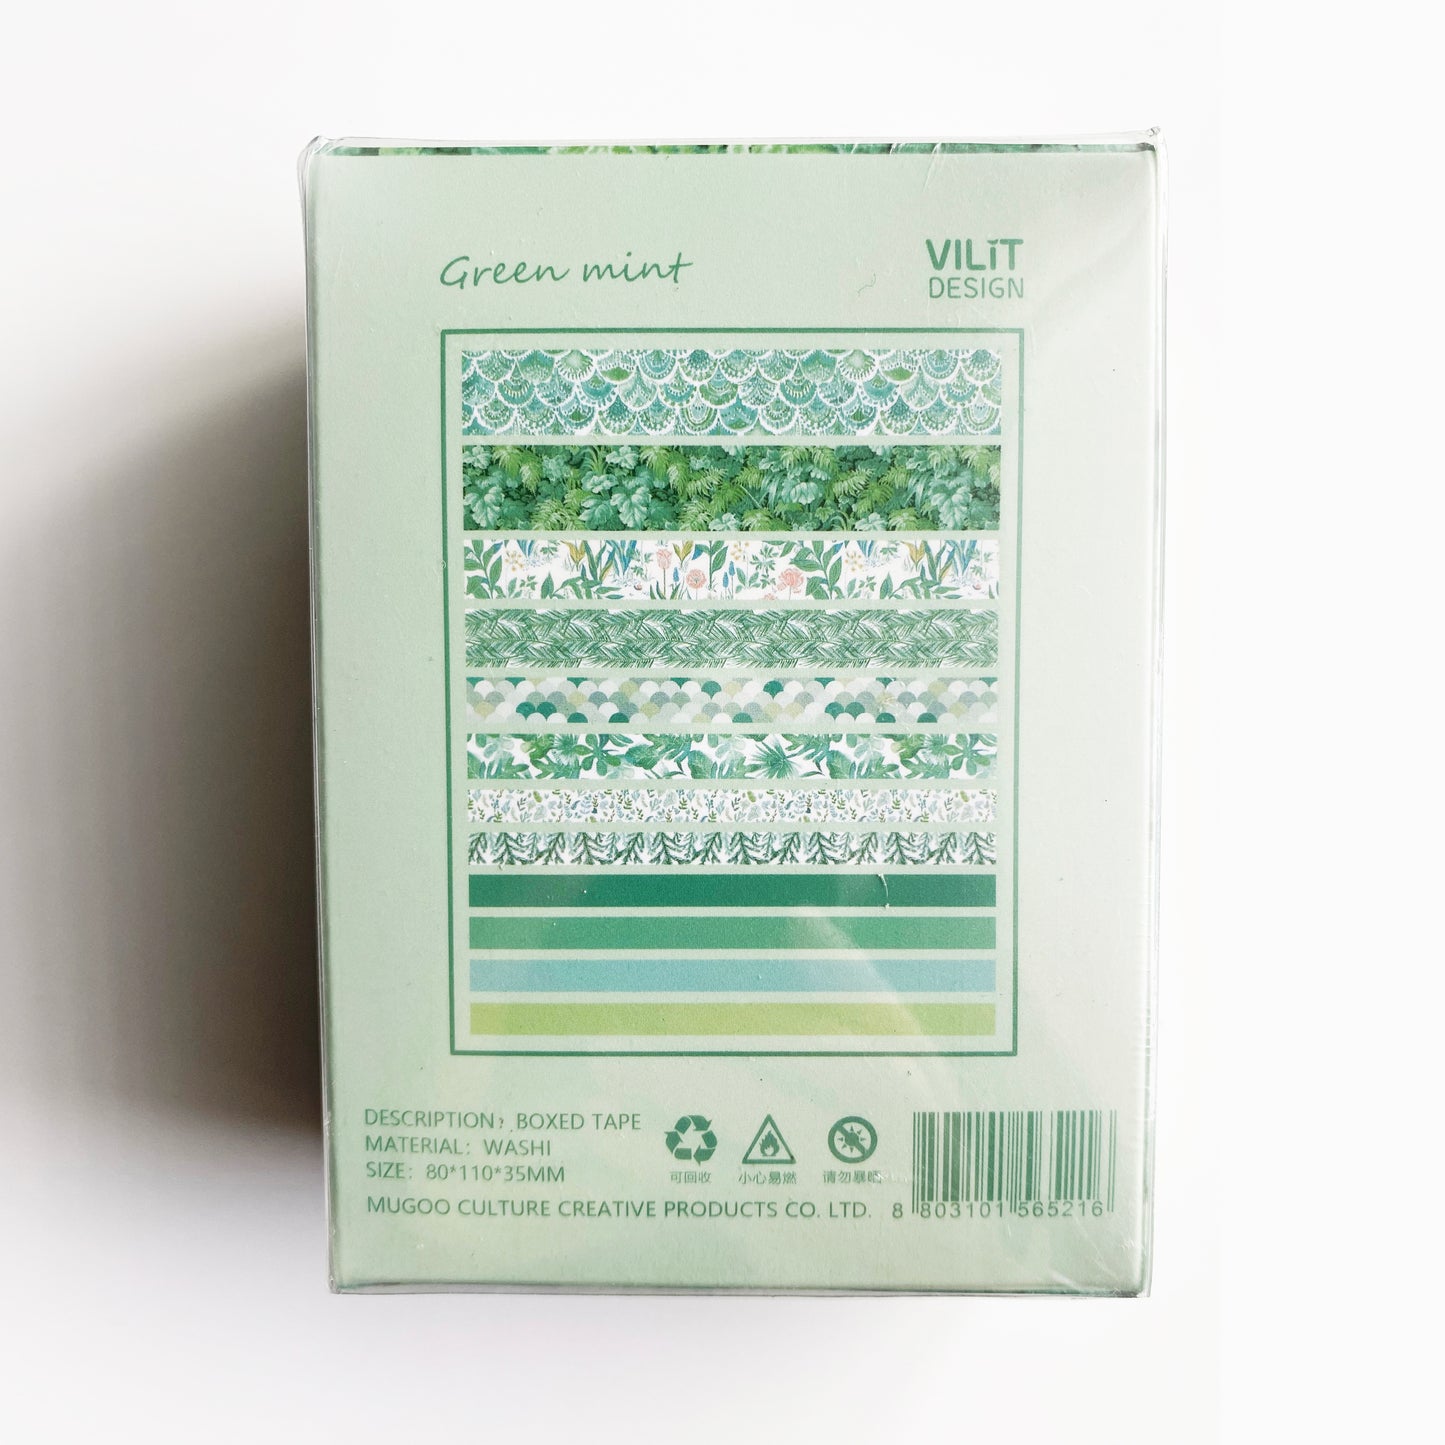 A2_Green Mint 12 rolls Washi tape set